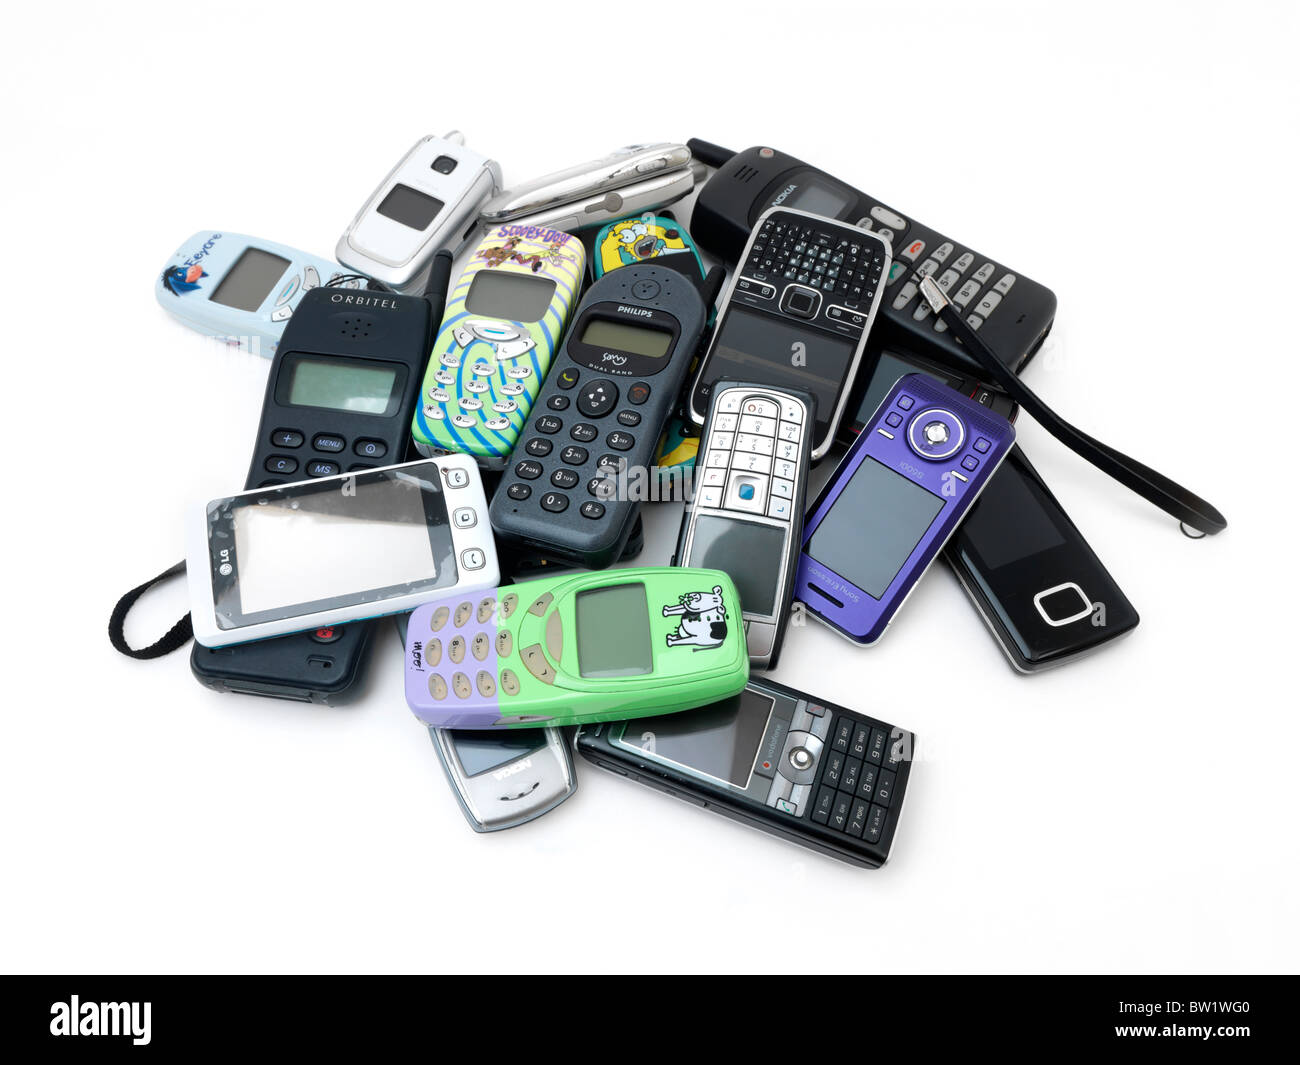 Una pila di vecchi e nuovi telefoni cellulari Nokia, Samsung, LG, Motorola, Phillips e Sony Ericsson Foto Stock